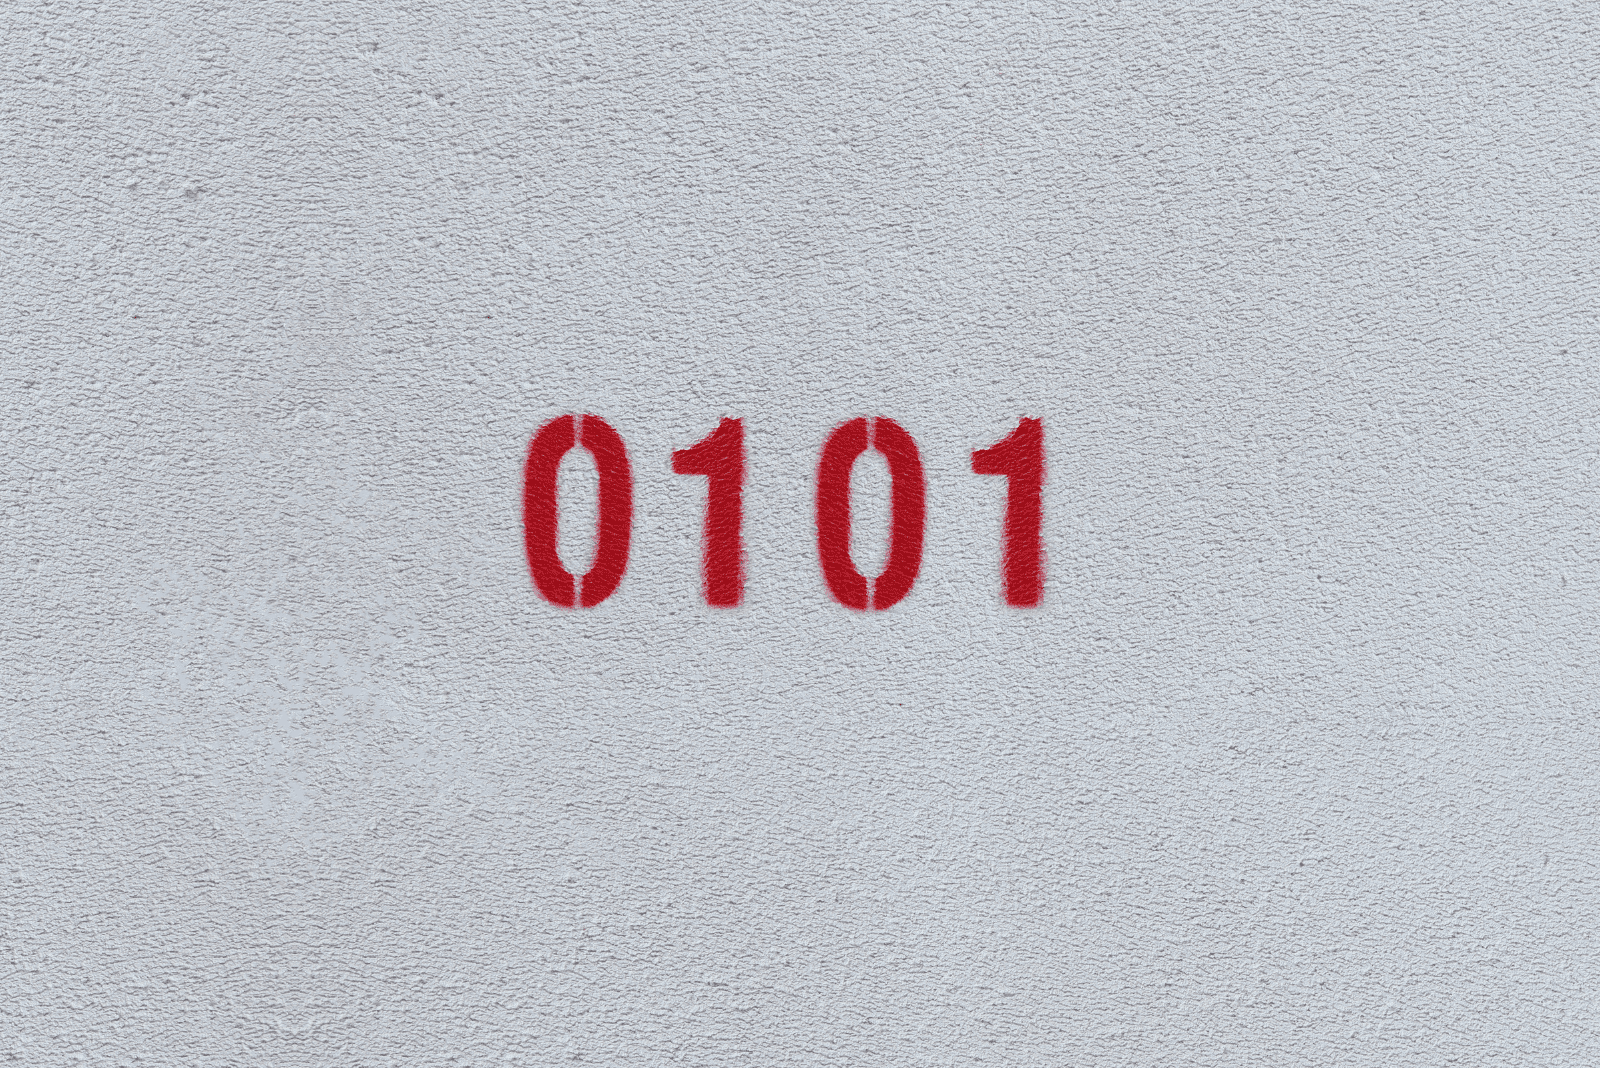 0101 sur un mur gris